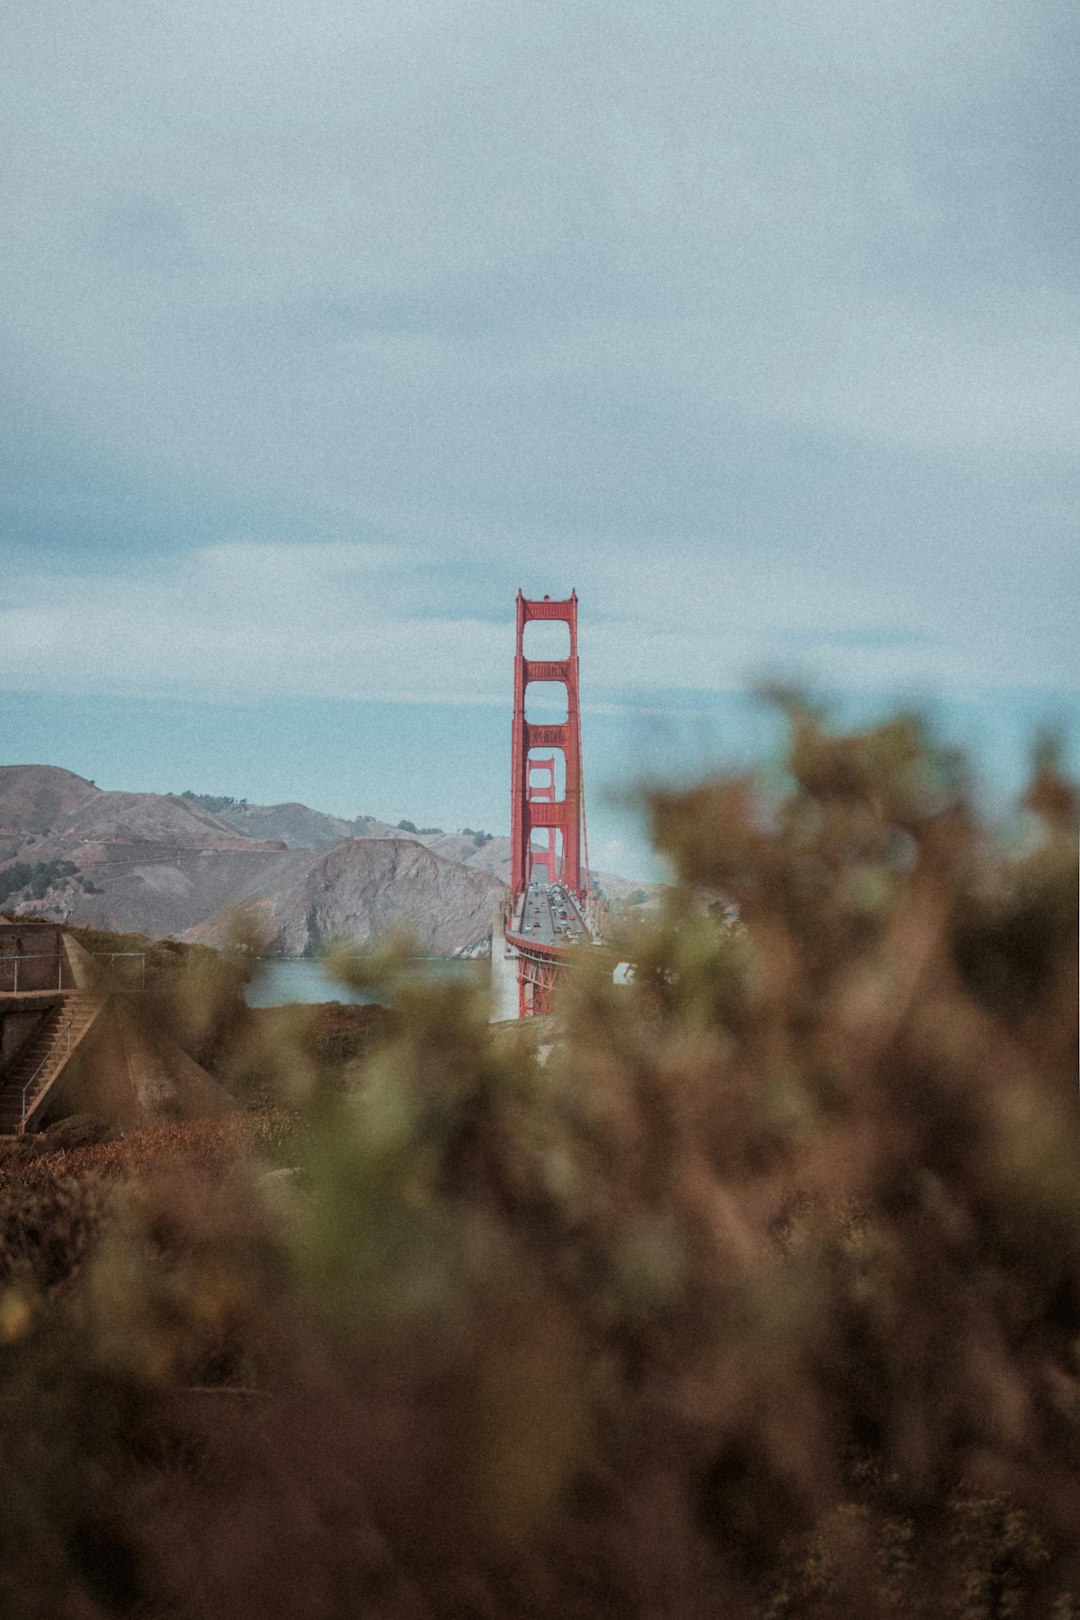 Hill photo spot Golden Gate Overlook Mount Tamalpais State Park